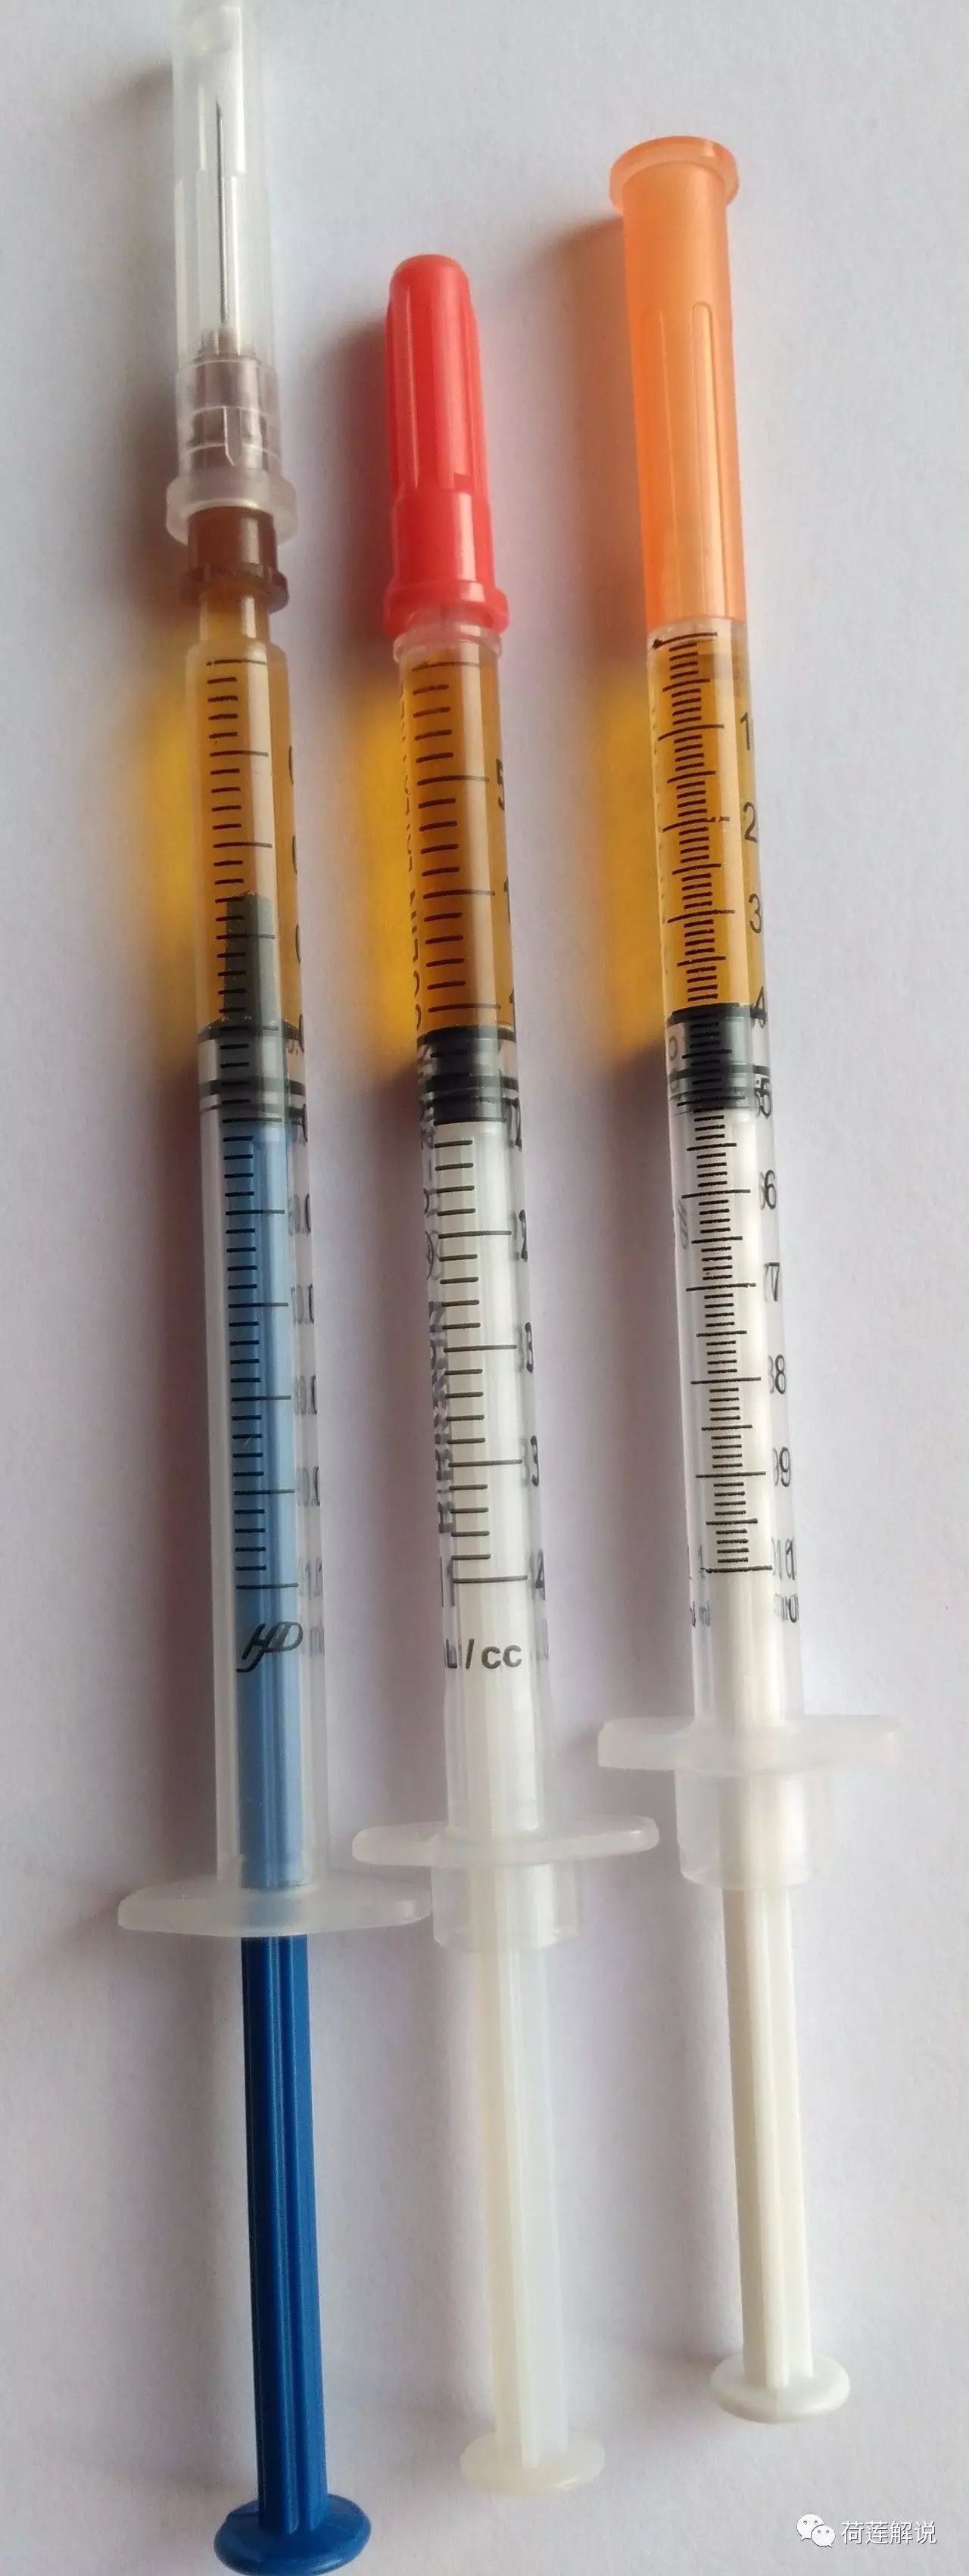 1毫升注射器(左)和1毫升胰岛素注射器(中,右)